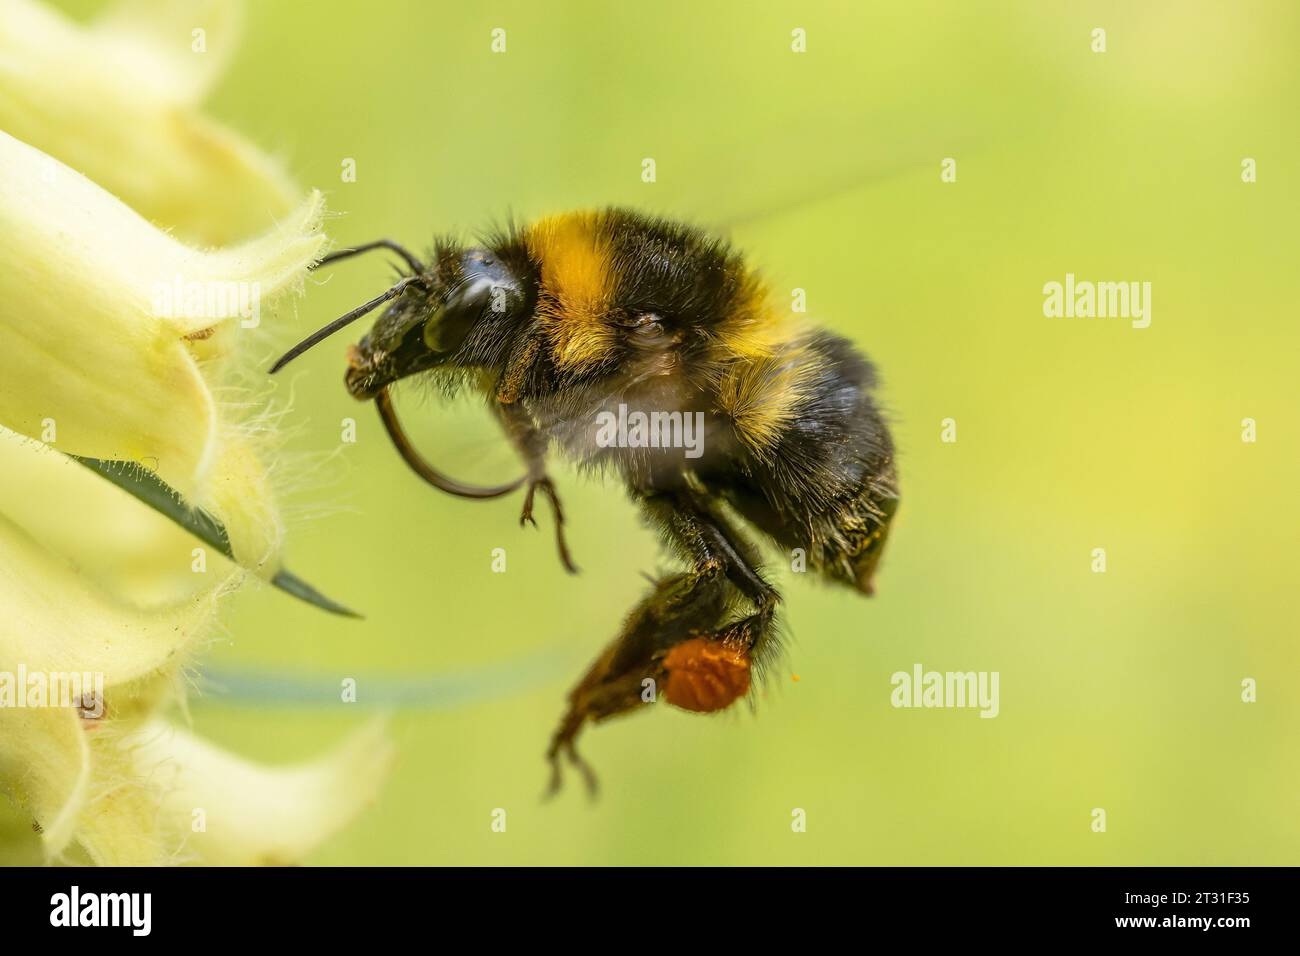 Bumblebee che si libra davanti al fiore da cui si sta per nutrire, impollinandolo nel processo, Garden, Kent, UK. Foto Stock